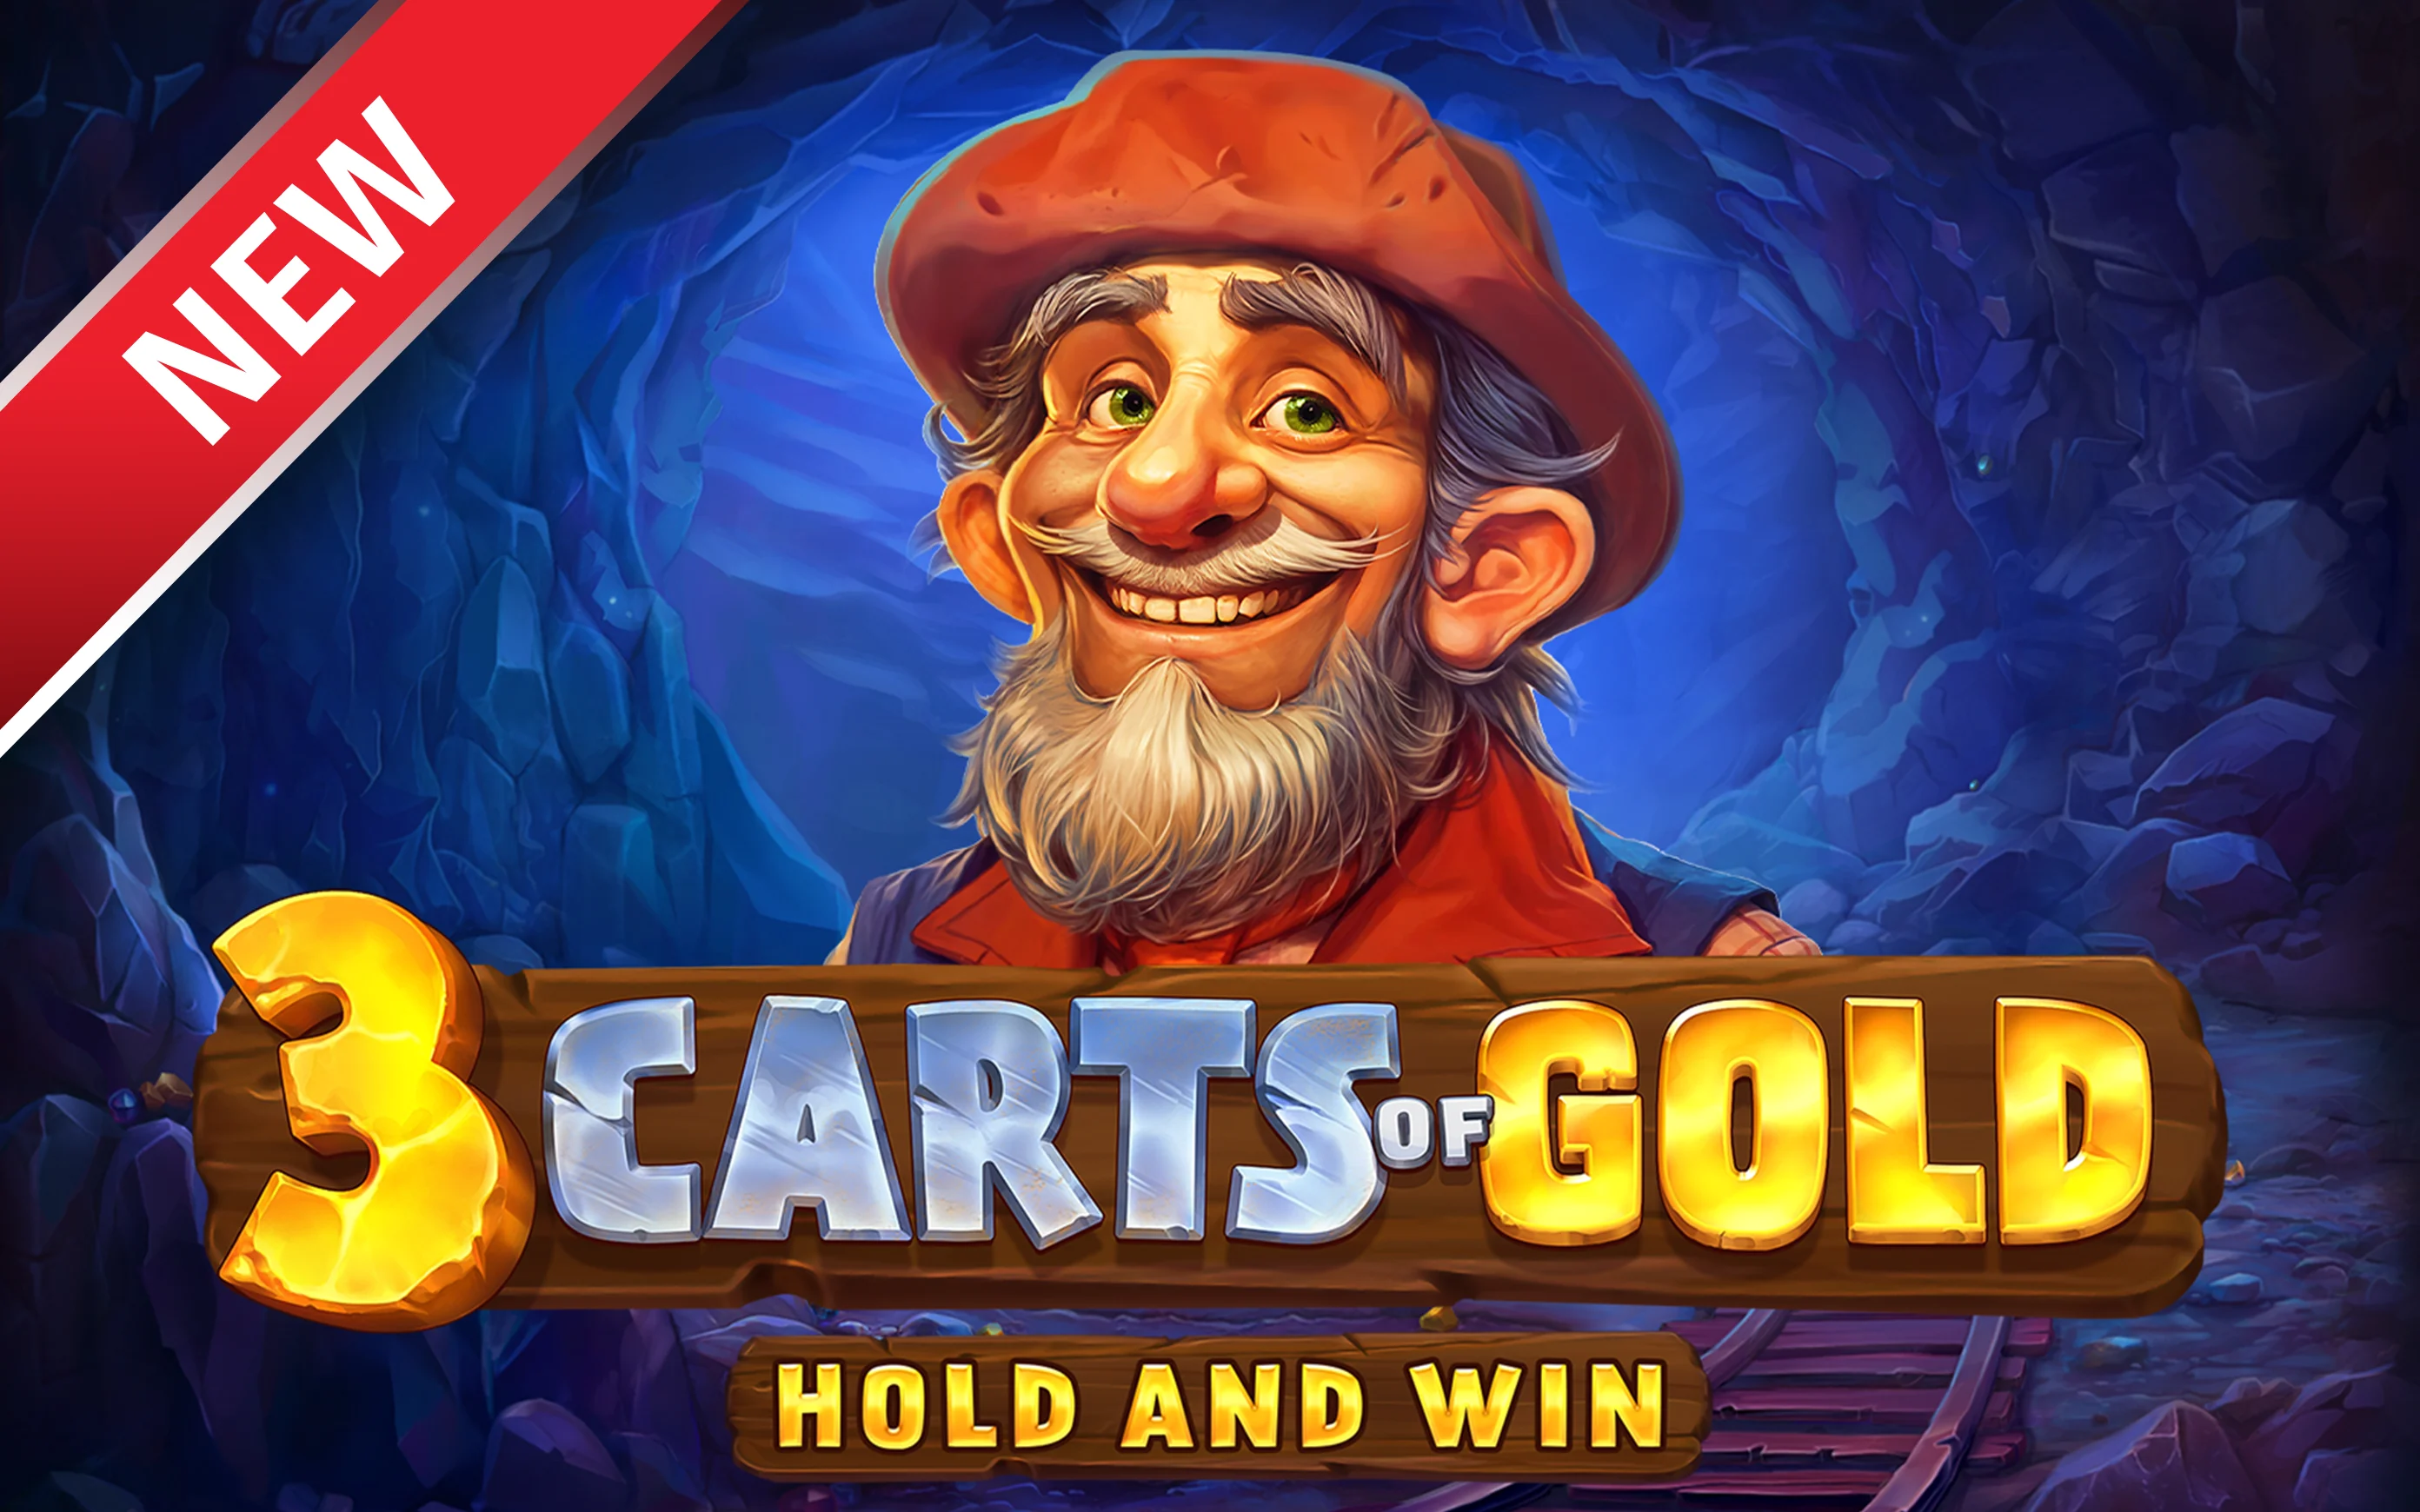 Играйте в 3 Carts of Gold: Hold and Win в онлайн-казино Starcasino.be